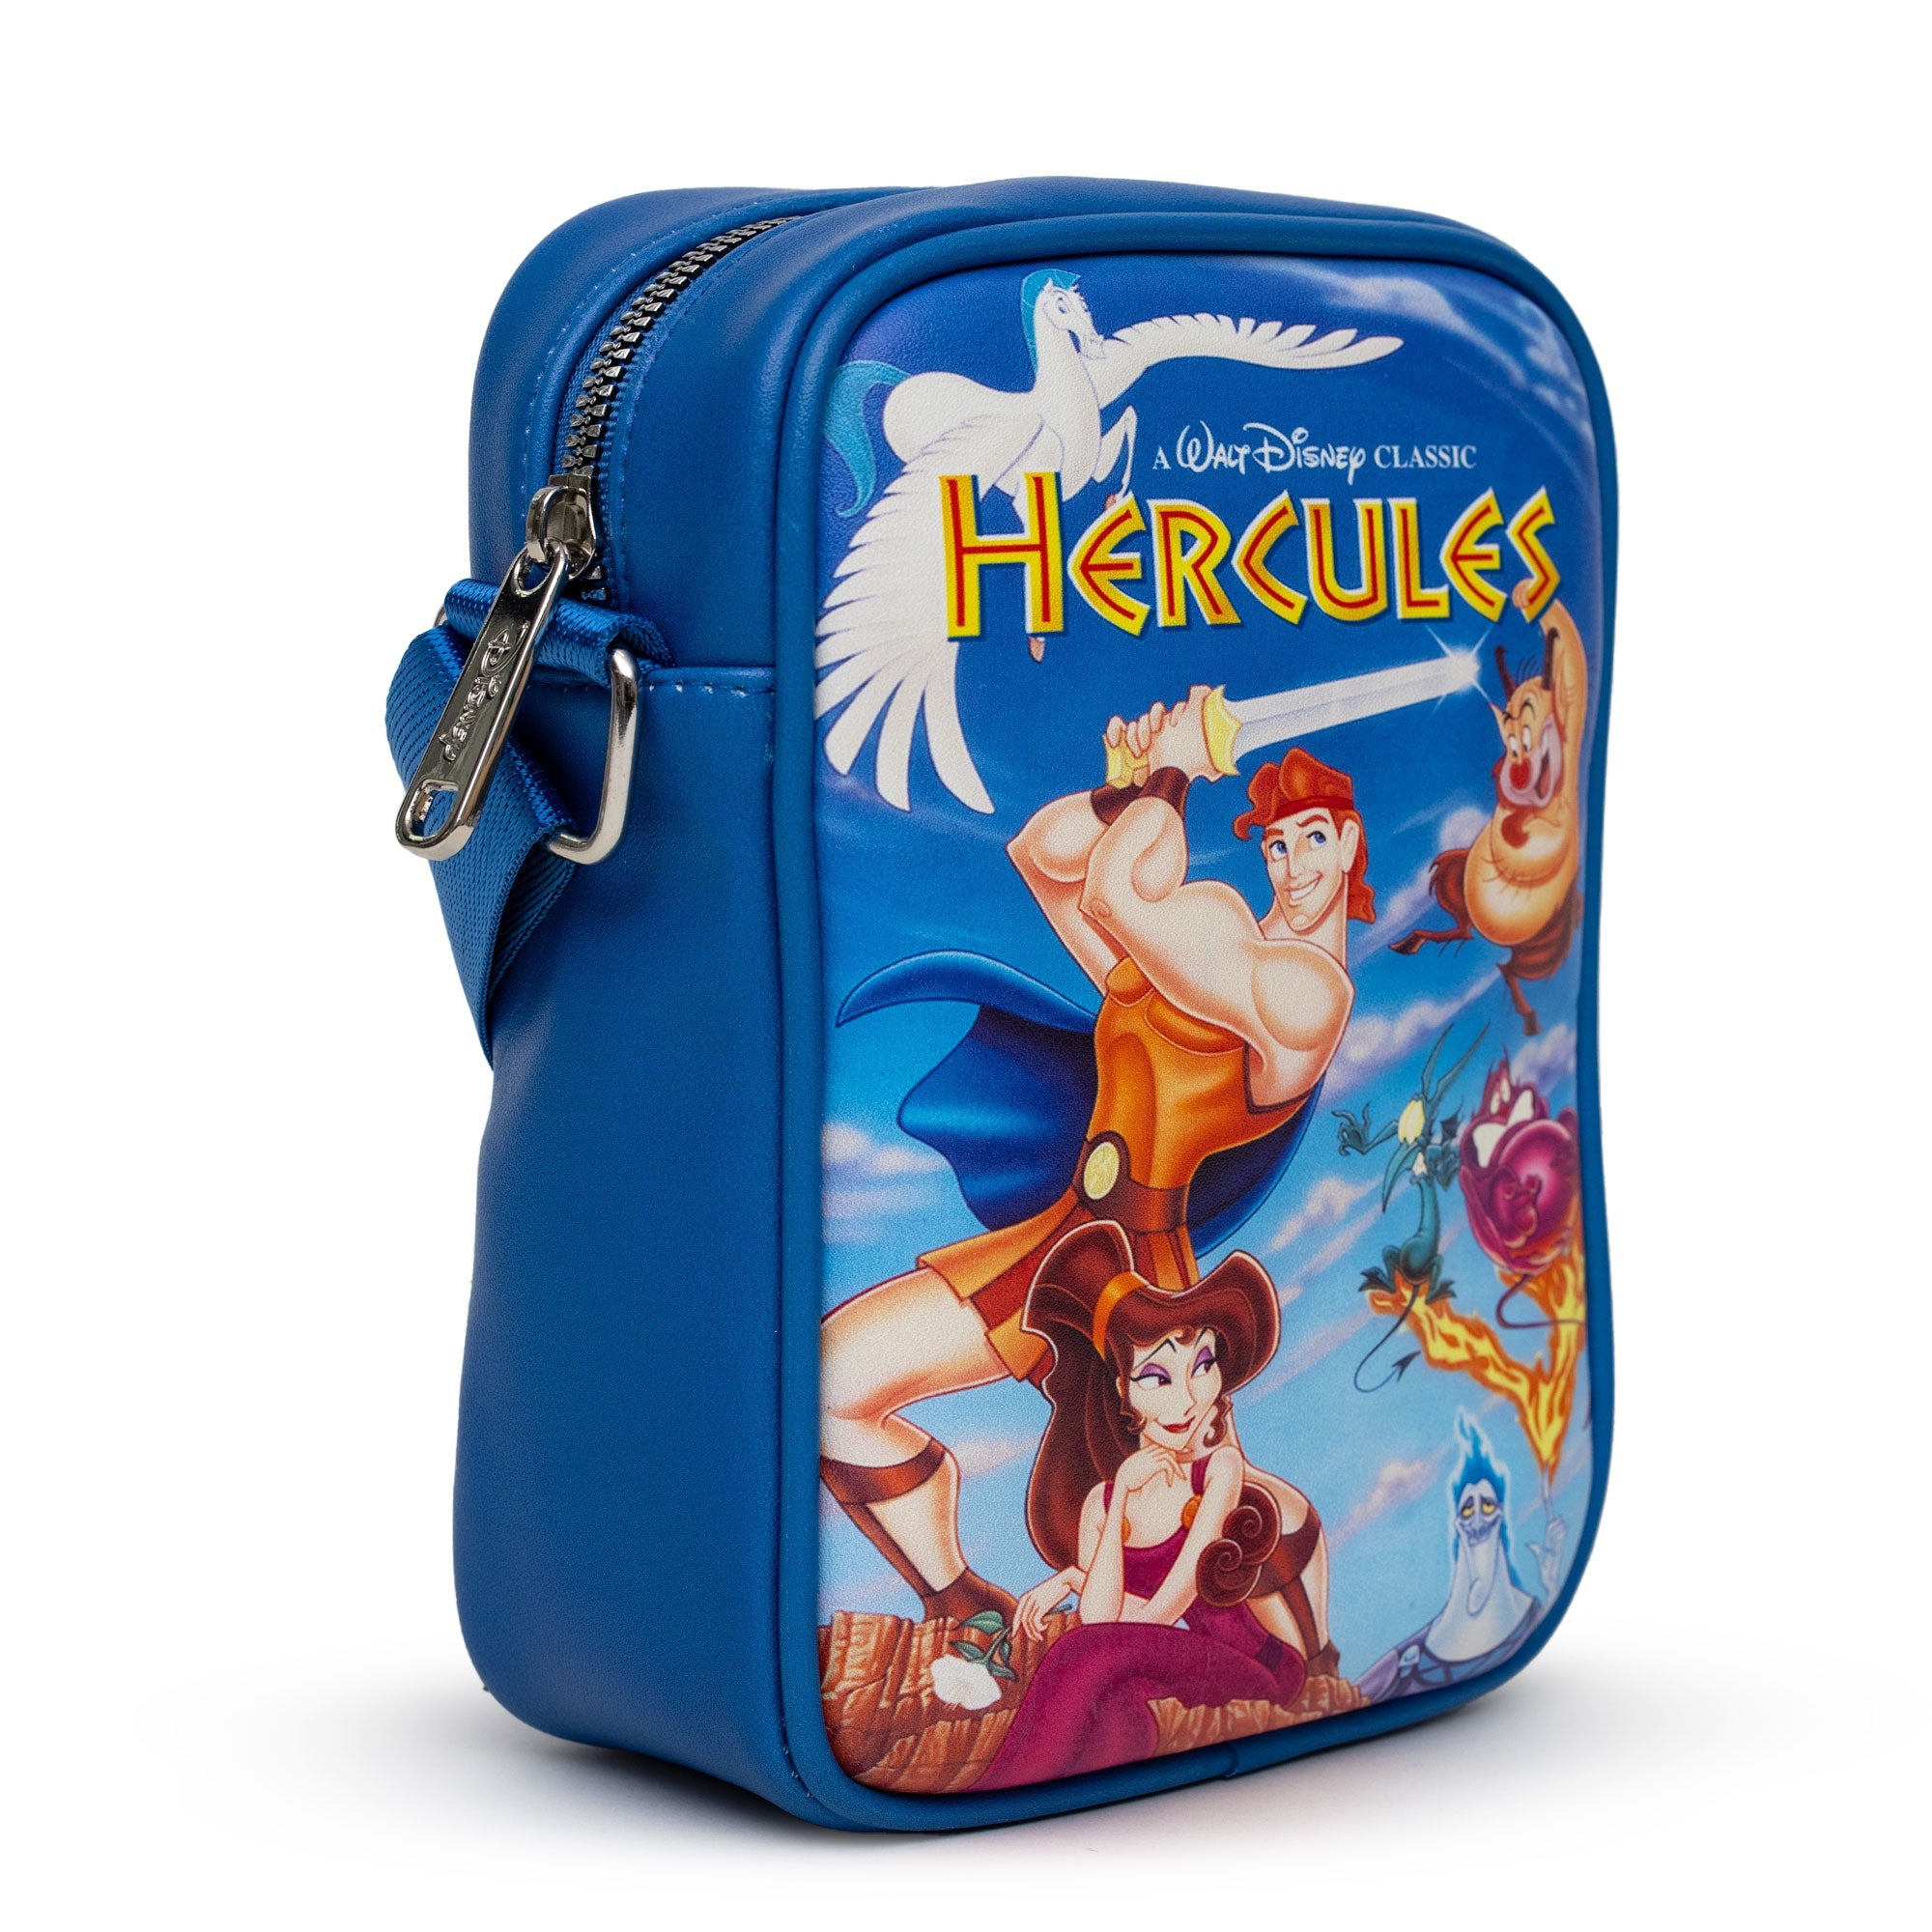 Disney Hercules VHS Movie Box Replica Crossbody Bag